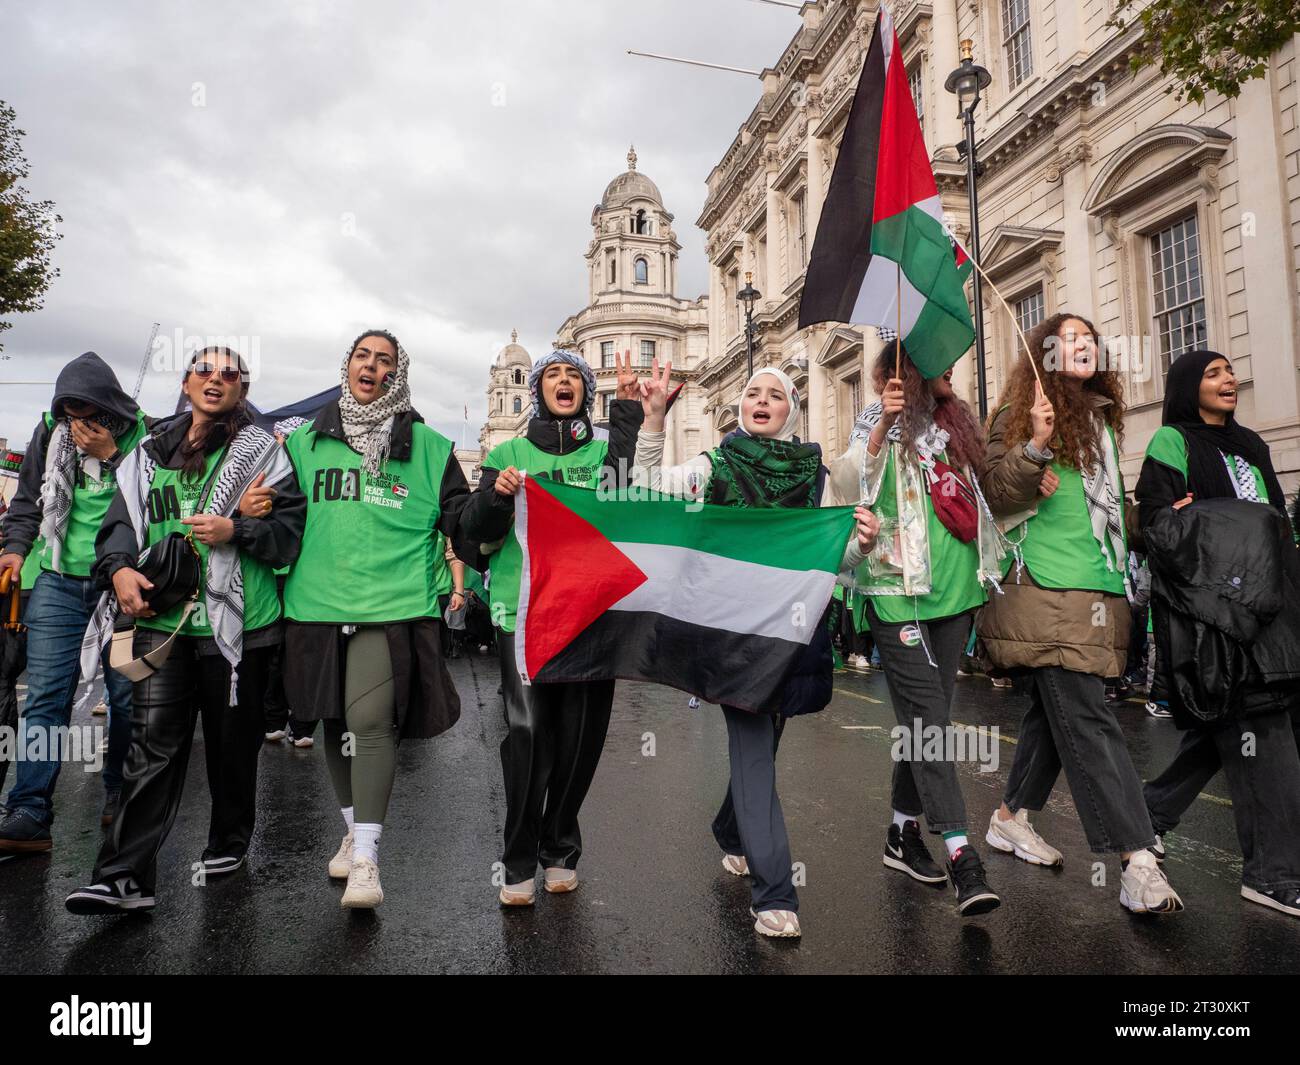 Freunde von Al-Aqsa FOA pro-palästinensische Demonstranten in London, Großbritannien, bei der Demonstration „National March for Palestine“ (nationaler Marsch für Palästina) den Krieg im Gazastreifen stoppen, marschieren, um gegen das israelische Palästinenserkonfikt über den Gazastreifen zu protestieren Stockfoto